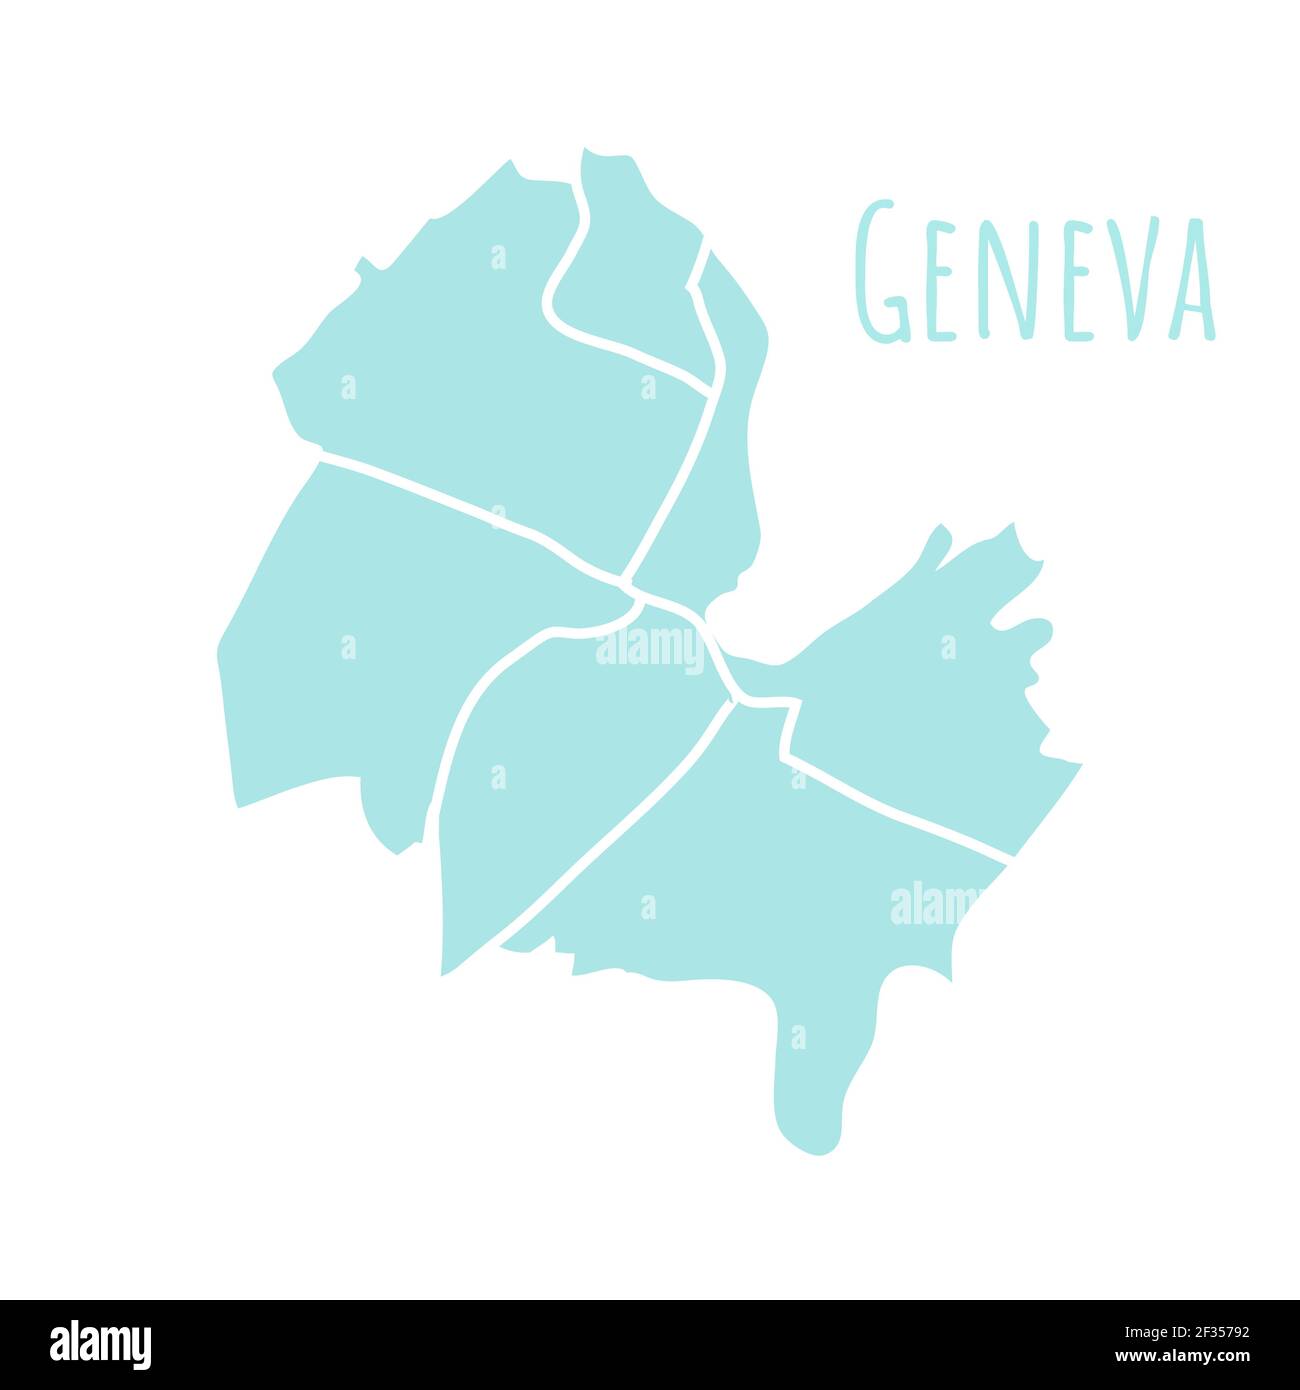 Geneva Karte Silhouette administrative Teilung, Vektor isoliert auf weißem Hintergrund. Grenze mit Straßen. Detaillierte Darstellung. Hauptstadt Stock Vektor